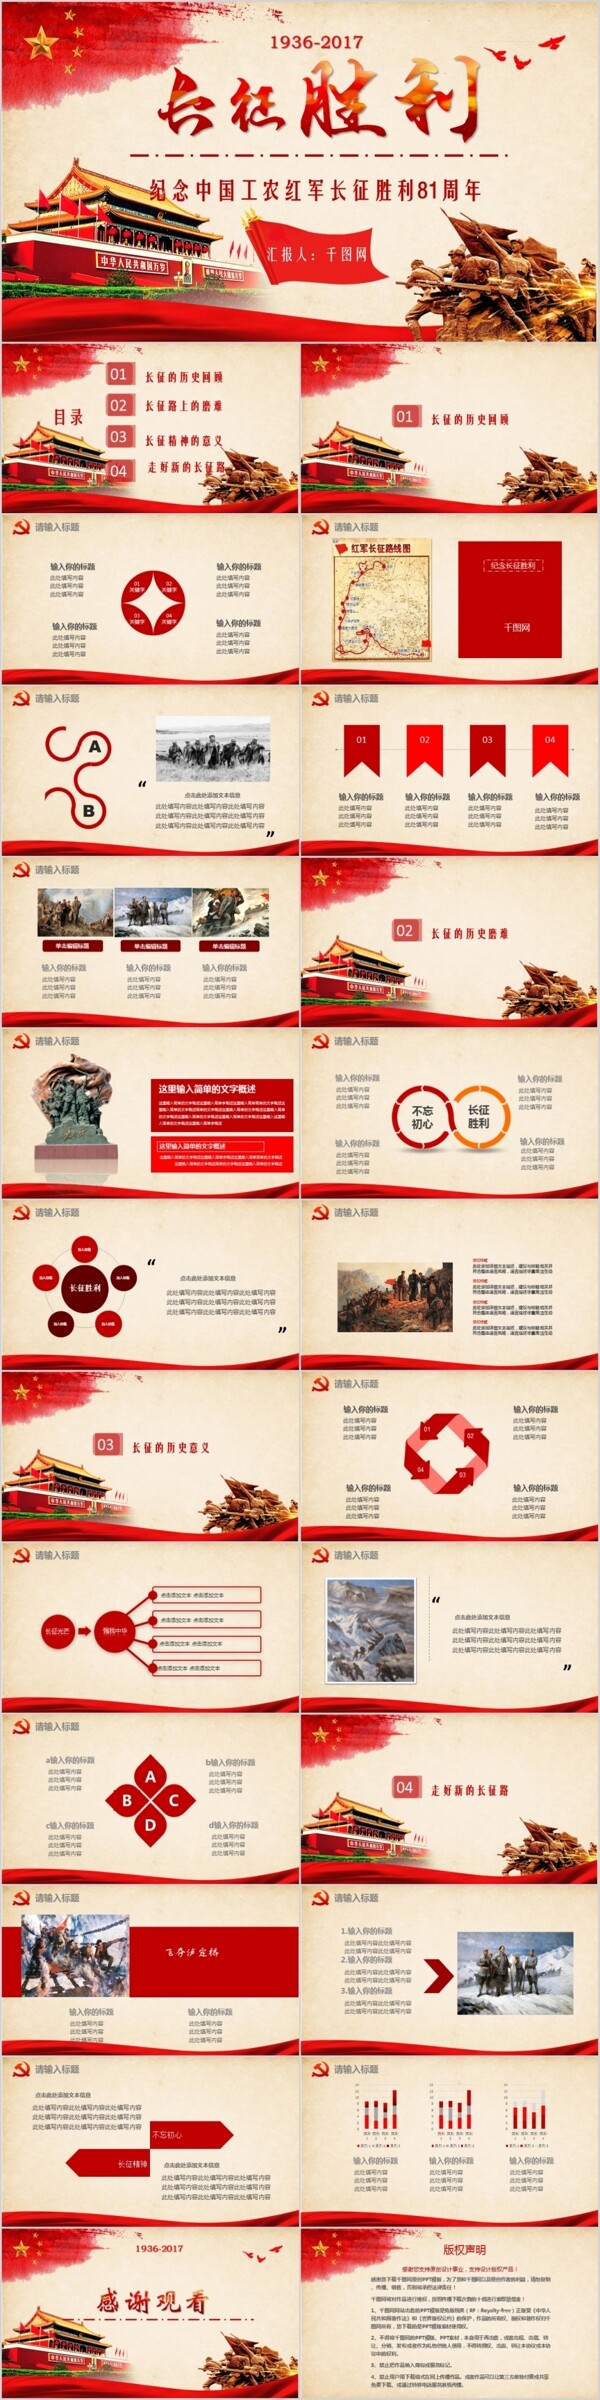 纪念中国工农红军长征胜利81周年爱国爱党教育PPT模板